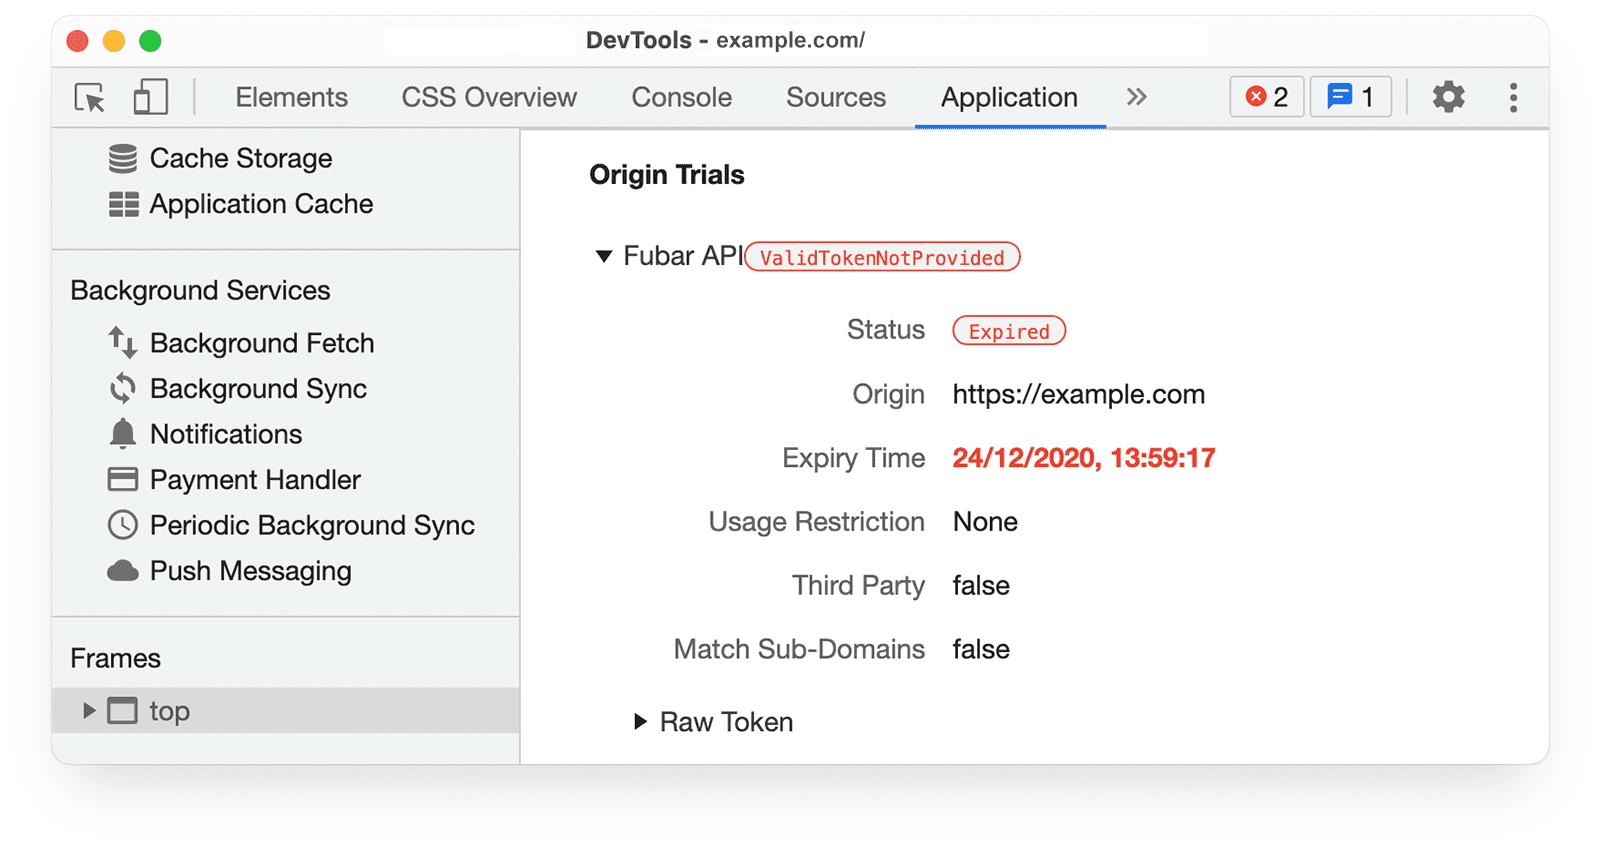 Chrome DevTools 
ऐप्लिकेशन पैनल में ऑरिजिन ट्रायल की जानकारी, जो स्टेटस को हाइलाइट करता है: सफल रहा.